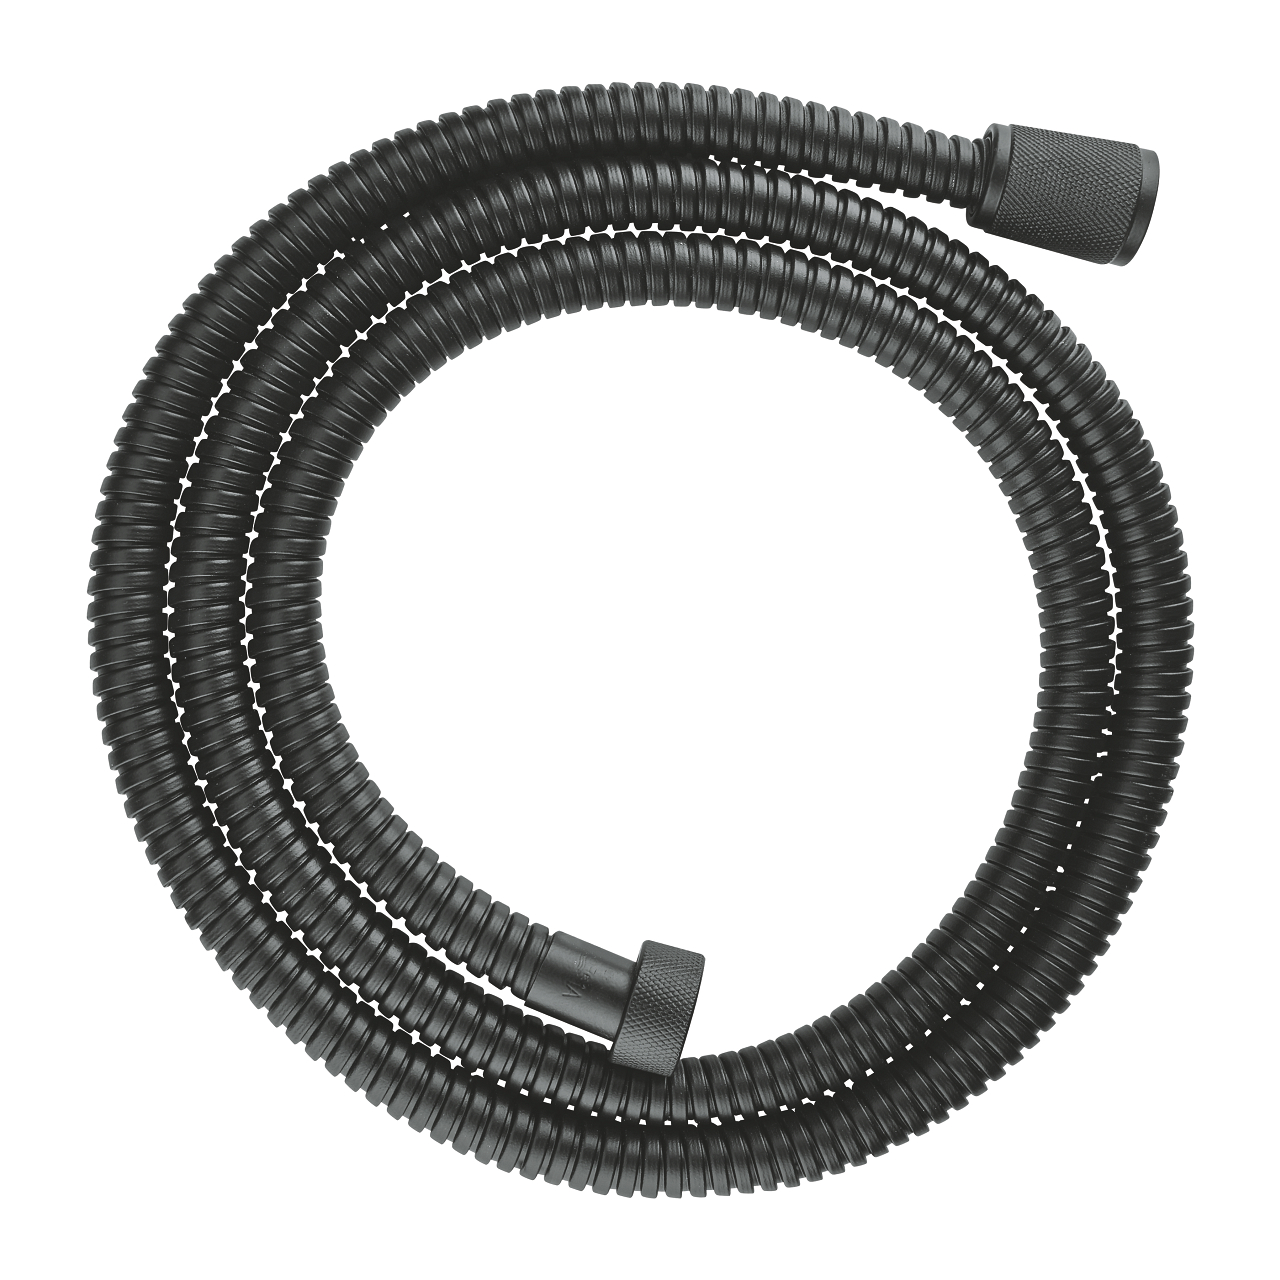 Grohe 1500mm VitalioFlex Metal Long-Life Shower Hose - Velvet Black